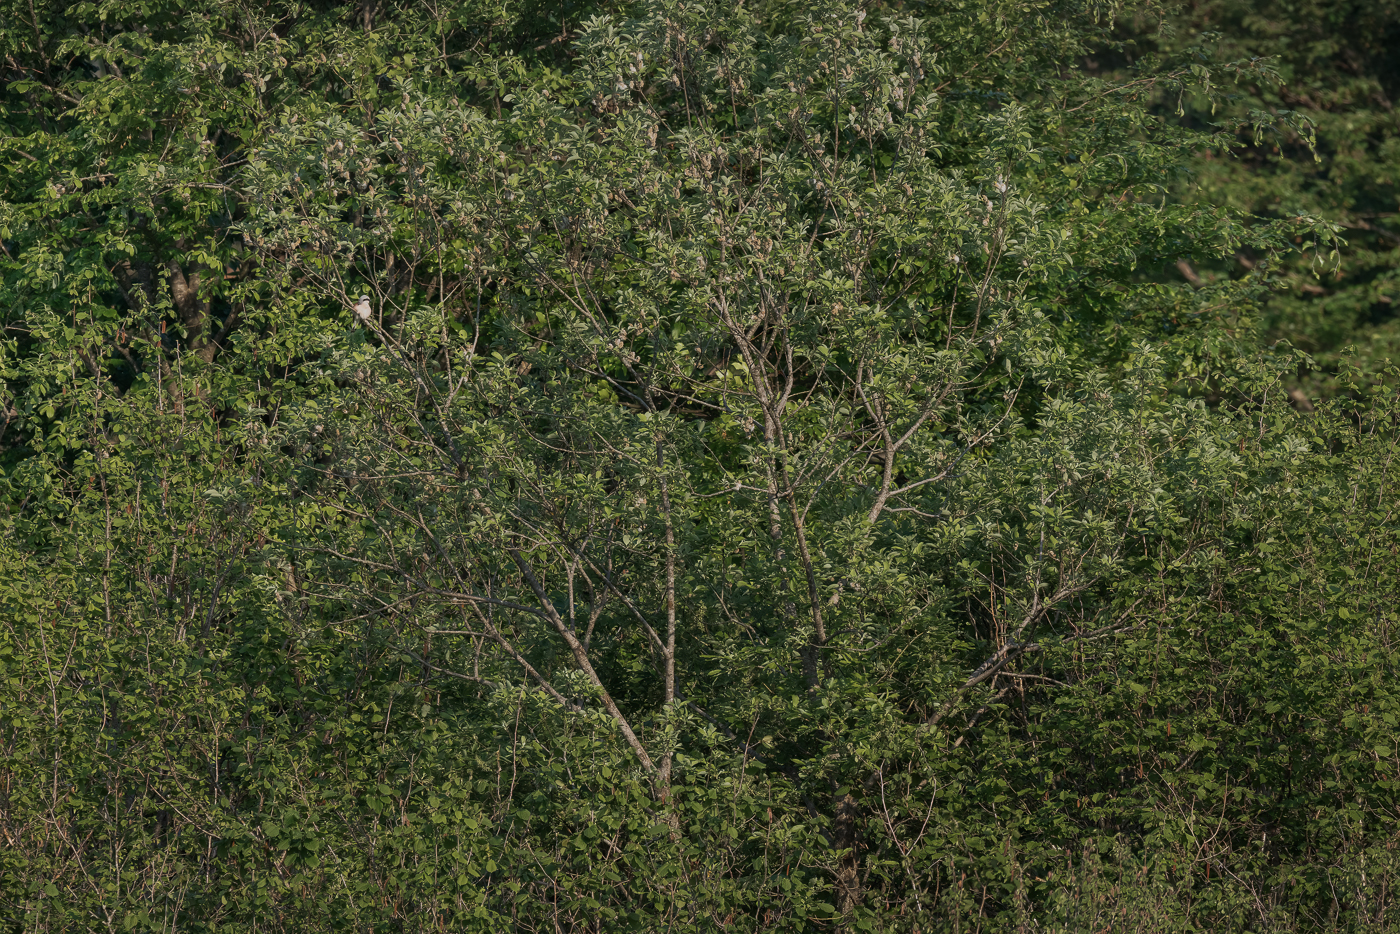 Le fitte trame verdi del bosco rivelano una presenza inequivocabile. Averla piccola (Lanius collurio). Prealpi Carniche, Italia.